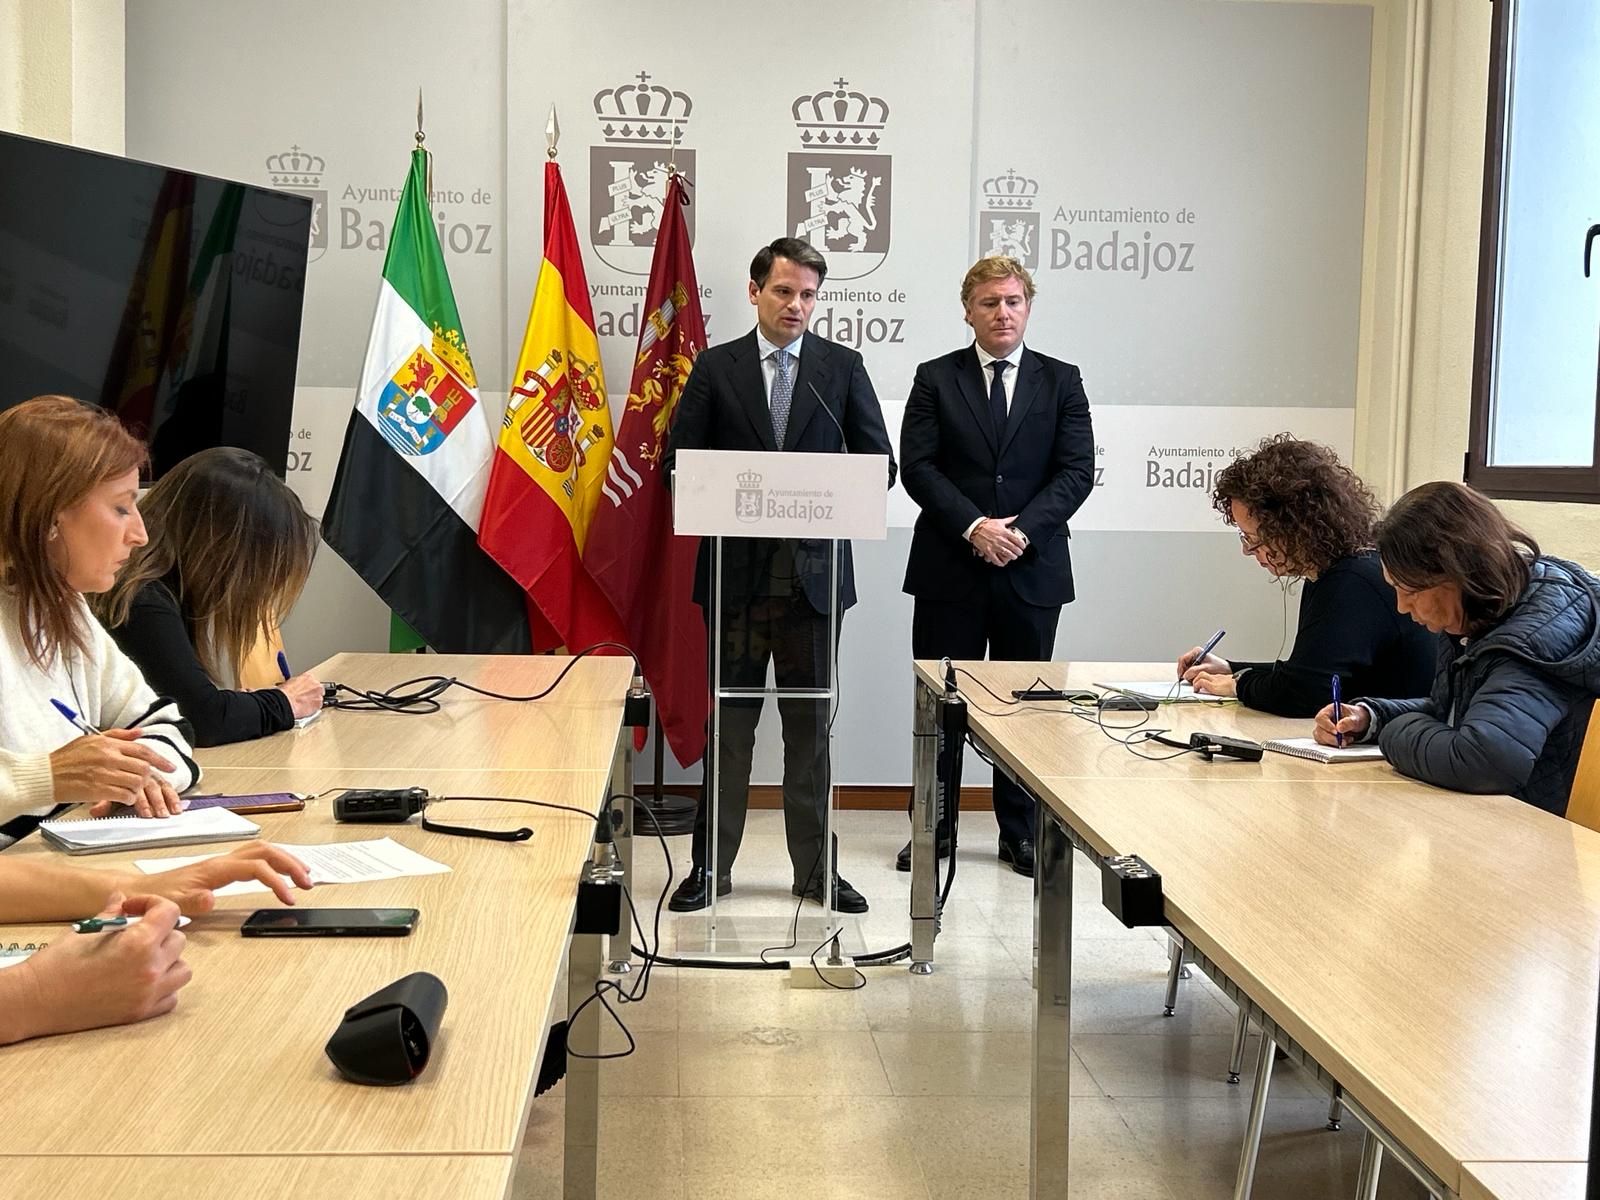 Image 3 of article La Junta de Extremadura y el Ayuntamiento de Badajoz firmarán próximamente los convenios de la ASPEX y del Consorcio del Casco Antiguo